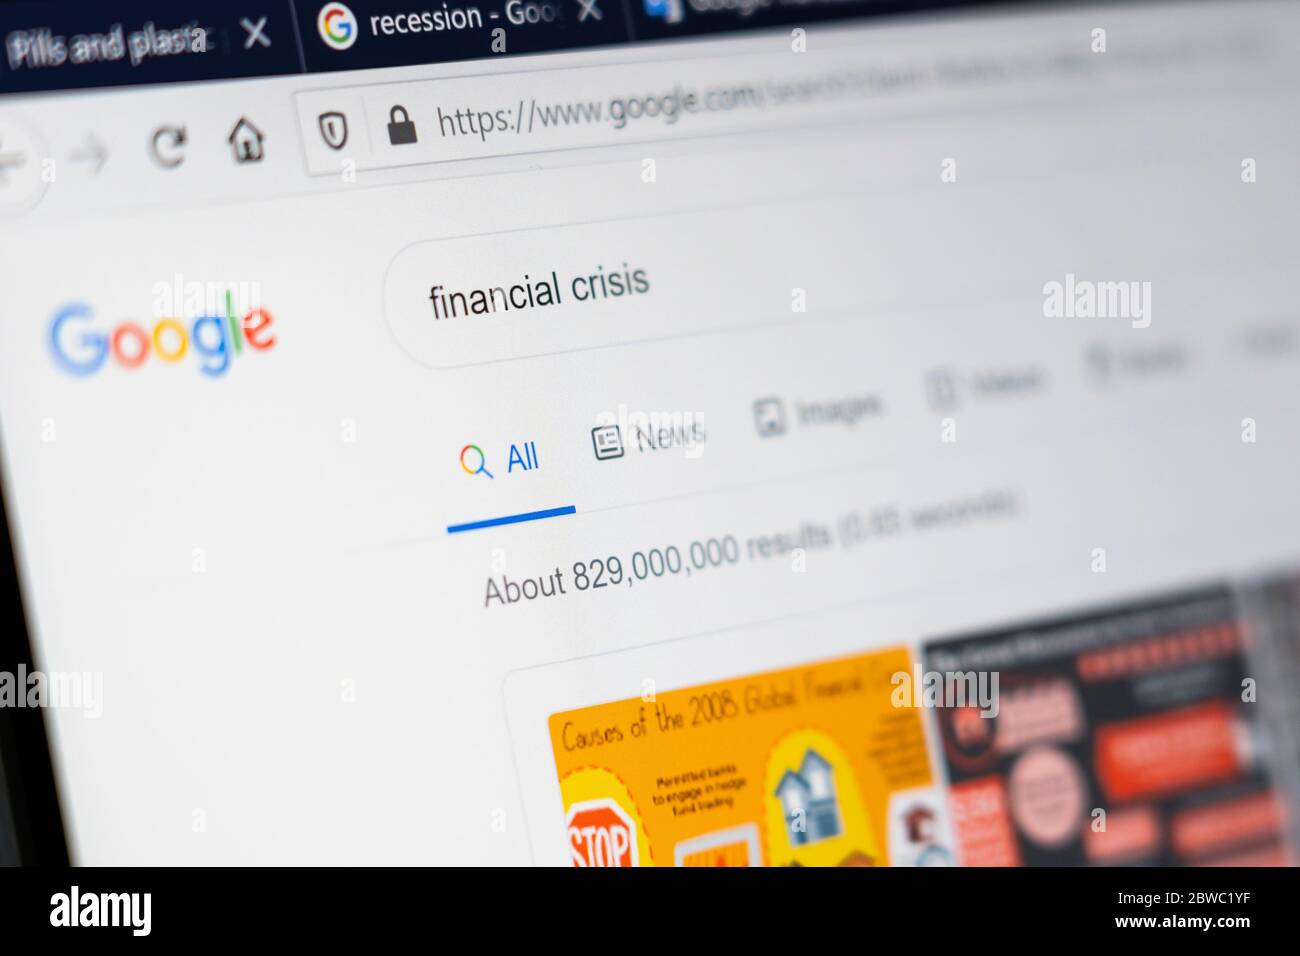 Una pantalla de ordenador que muestra las palabras "crisis financiera" como un término de búsqueda de Google con el número de resultados de búsqueda mostrados Foto de stock